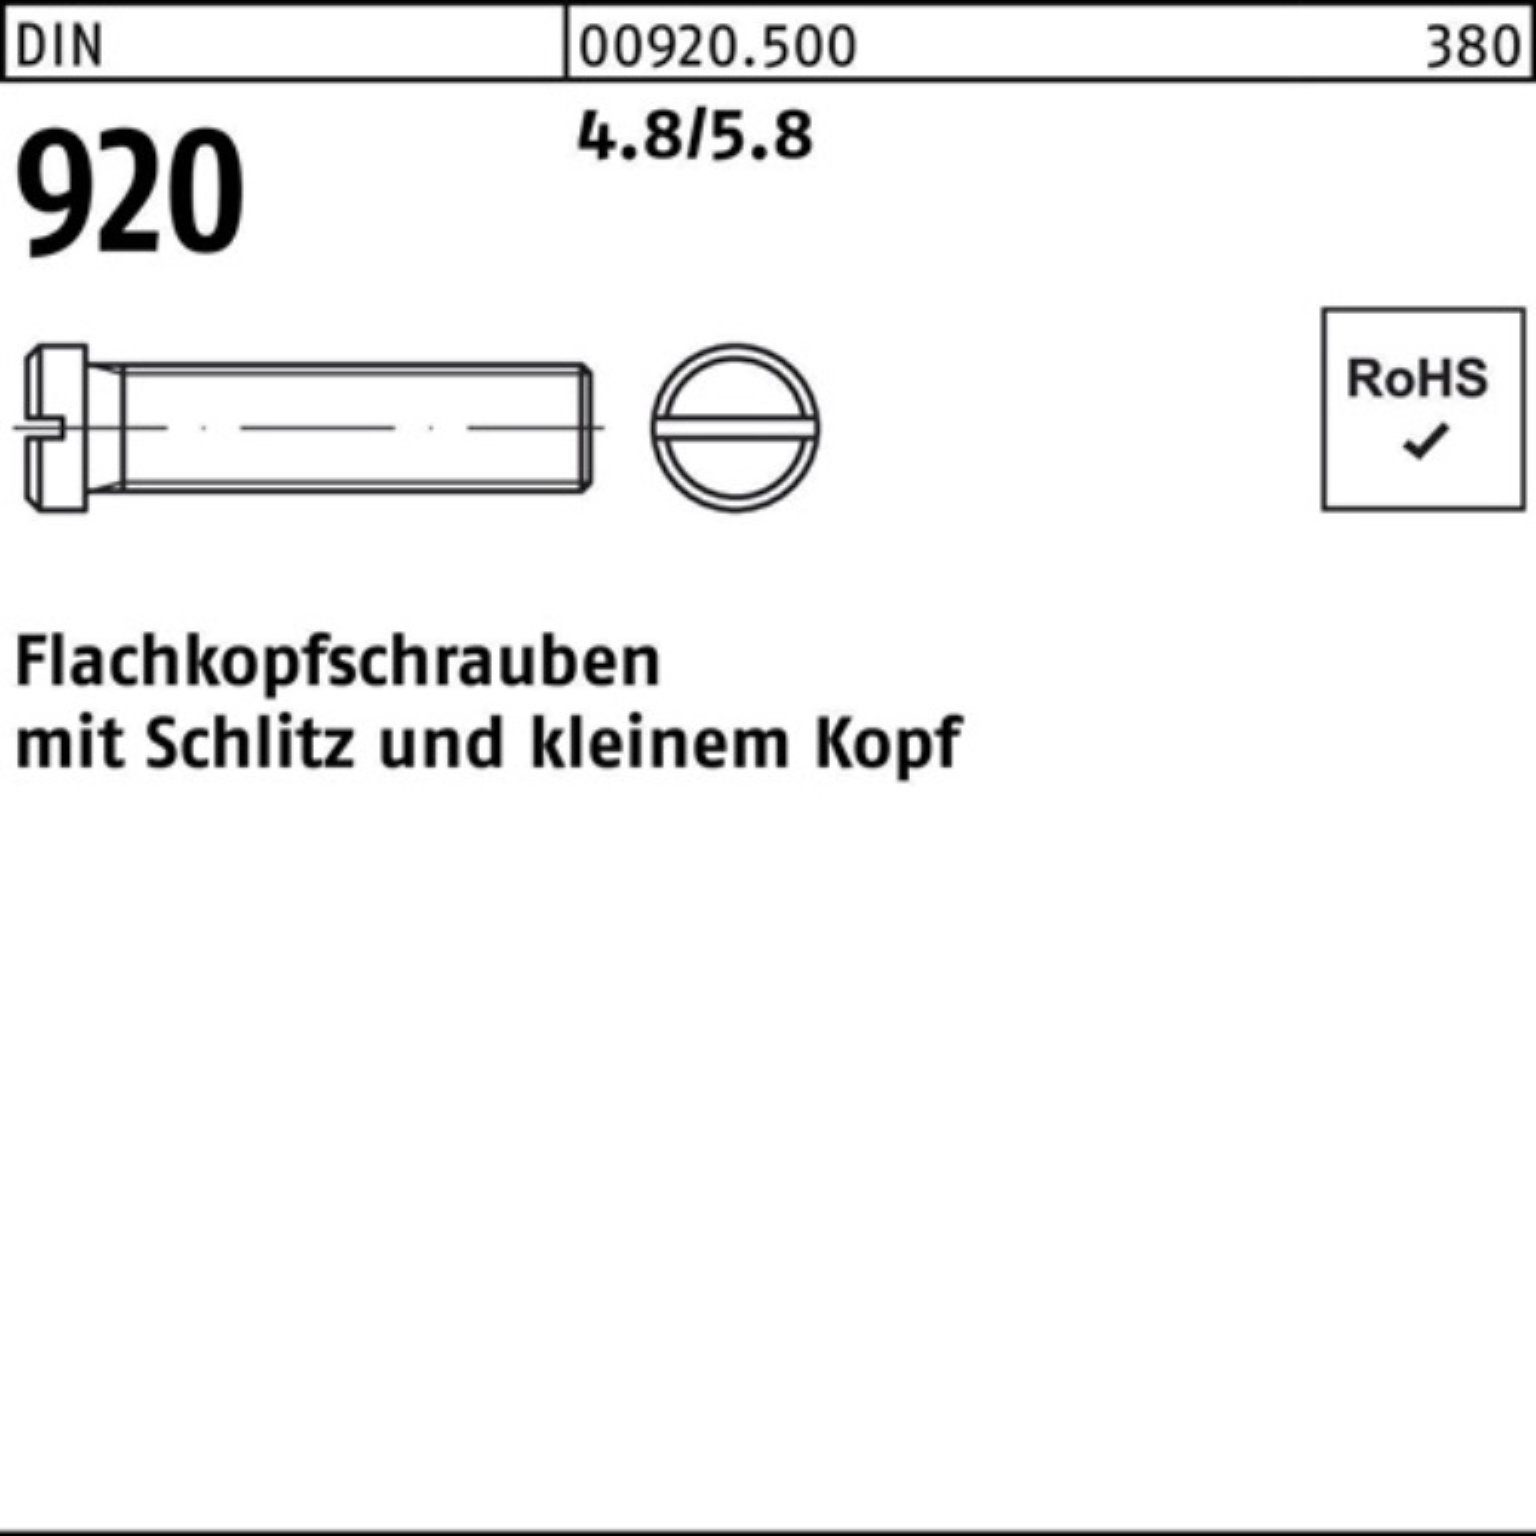 Reyher Schraube 100er Pack Flachkopfschraube DIN 920 Schlitz M3x 10 4.8/5.8 100 Stück